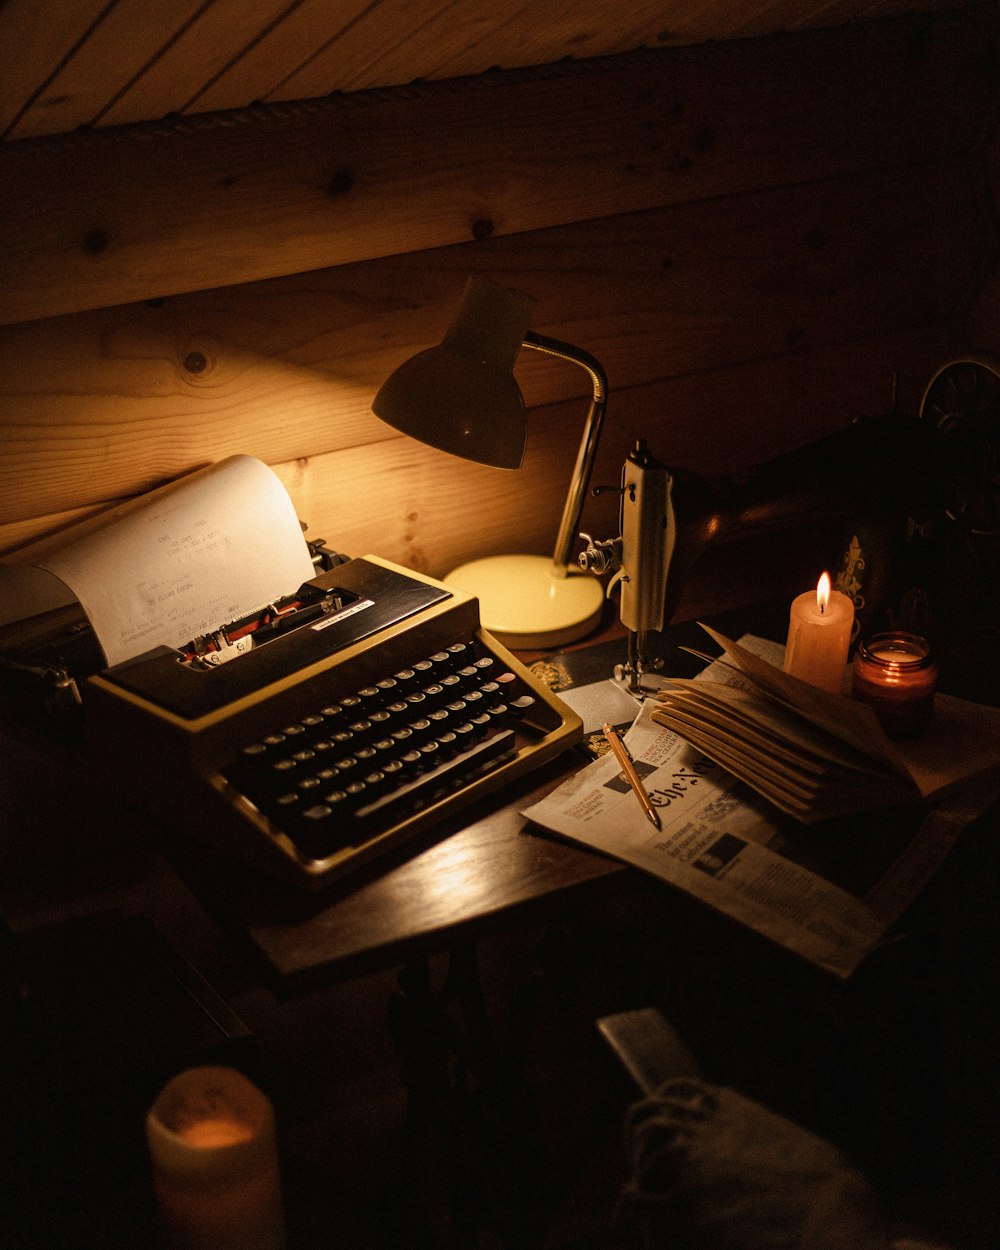 Eine altmodische Schreibmaschine sitzt auf einem Schreibtisch neben einer Lampe